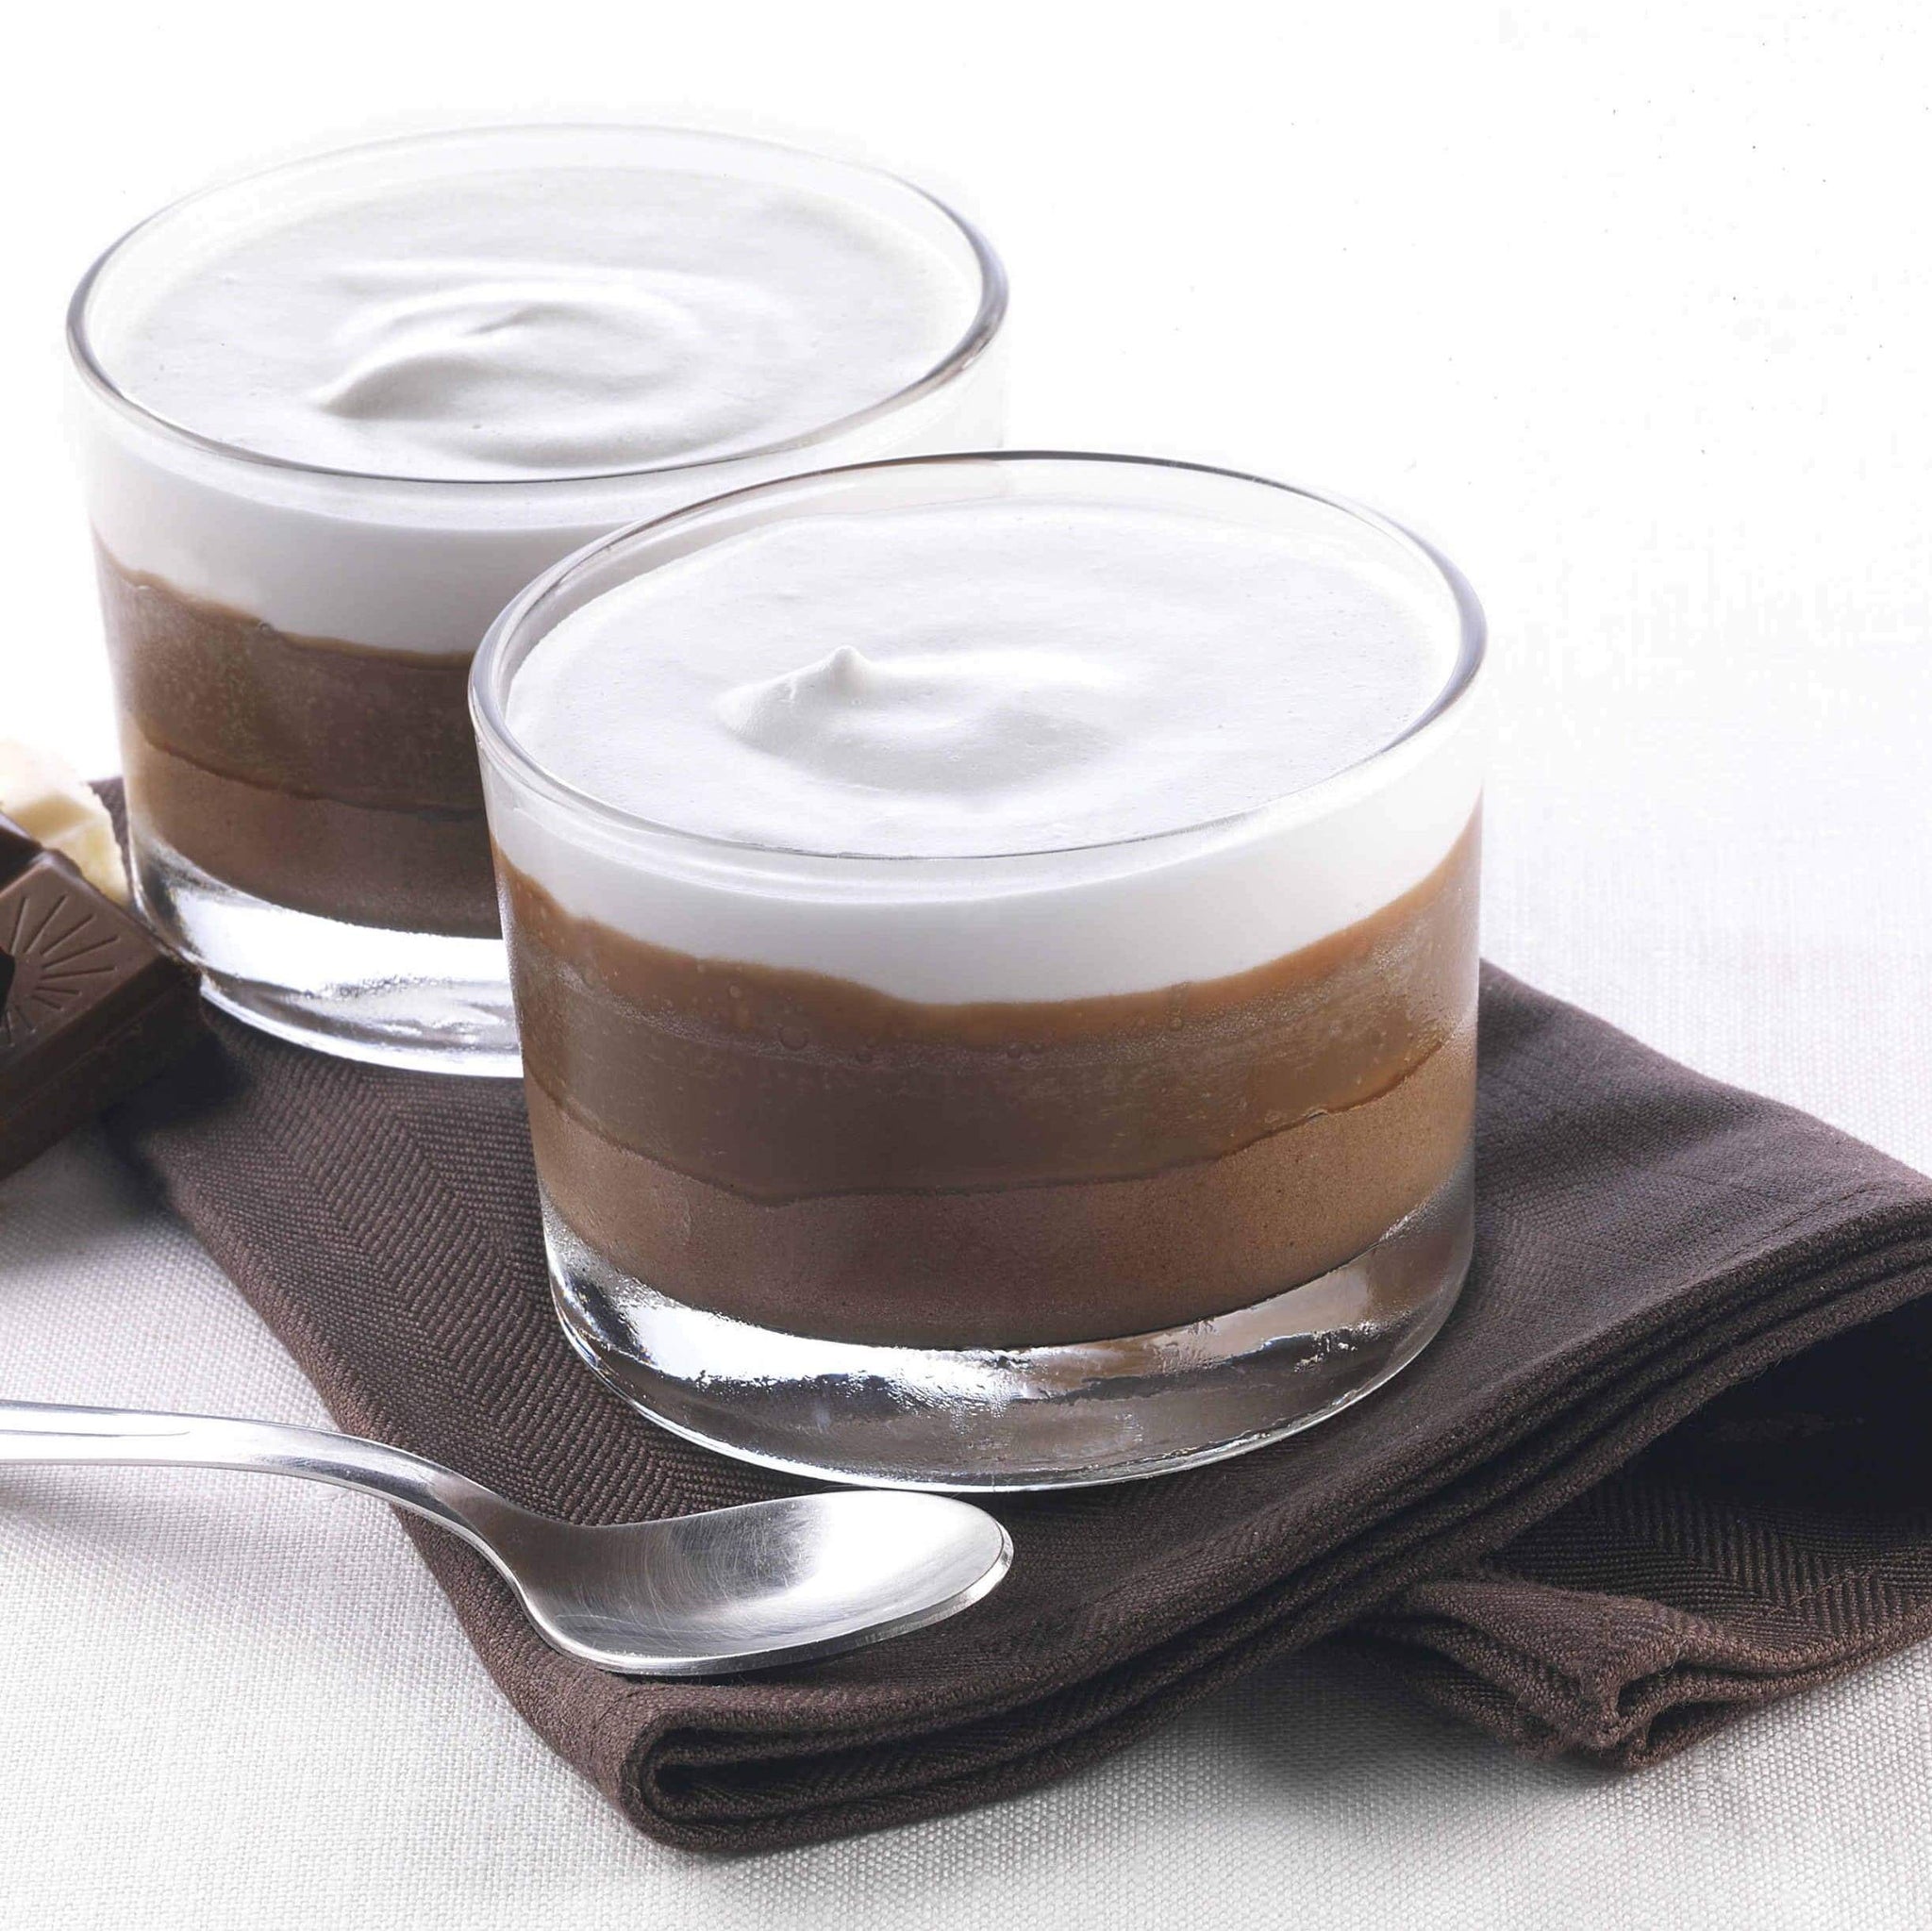 Coppa Tre Cioccolati: in un'elegante coppa in vetro, un trionfo del cioccolato. Crema al cioccolato bianco, crema al cioccolato fondente e un delizioso crunch al cioccolato al latte.